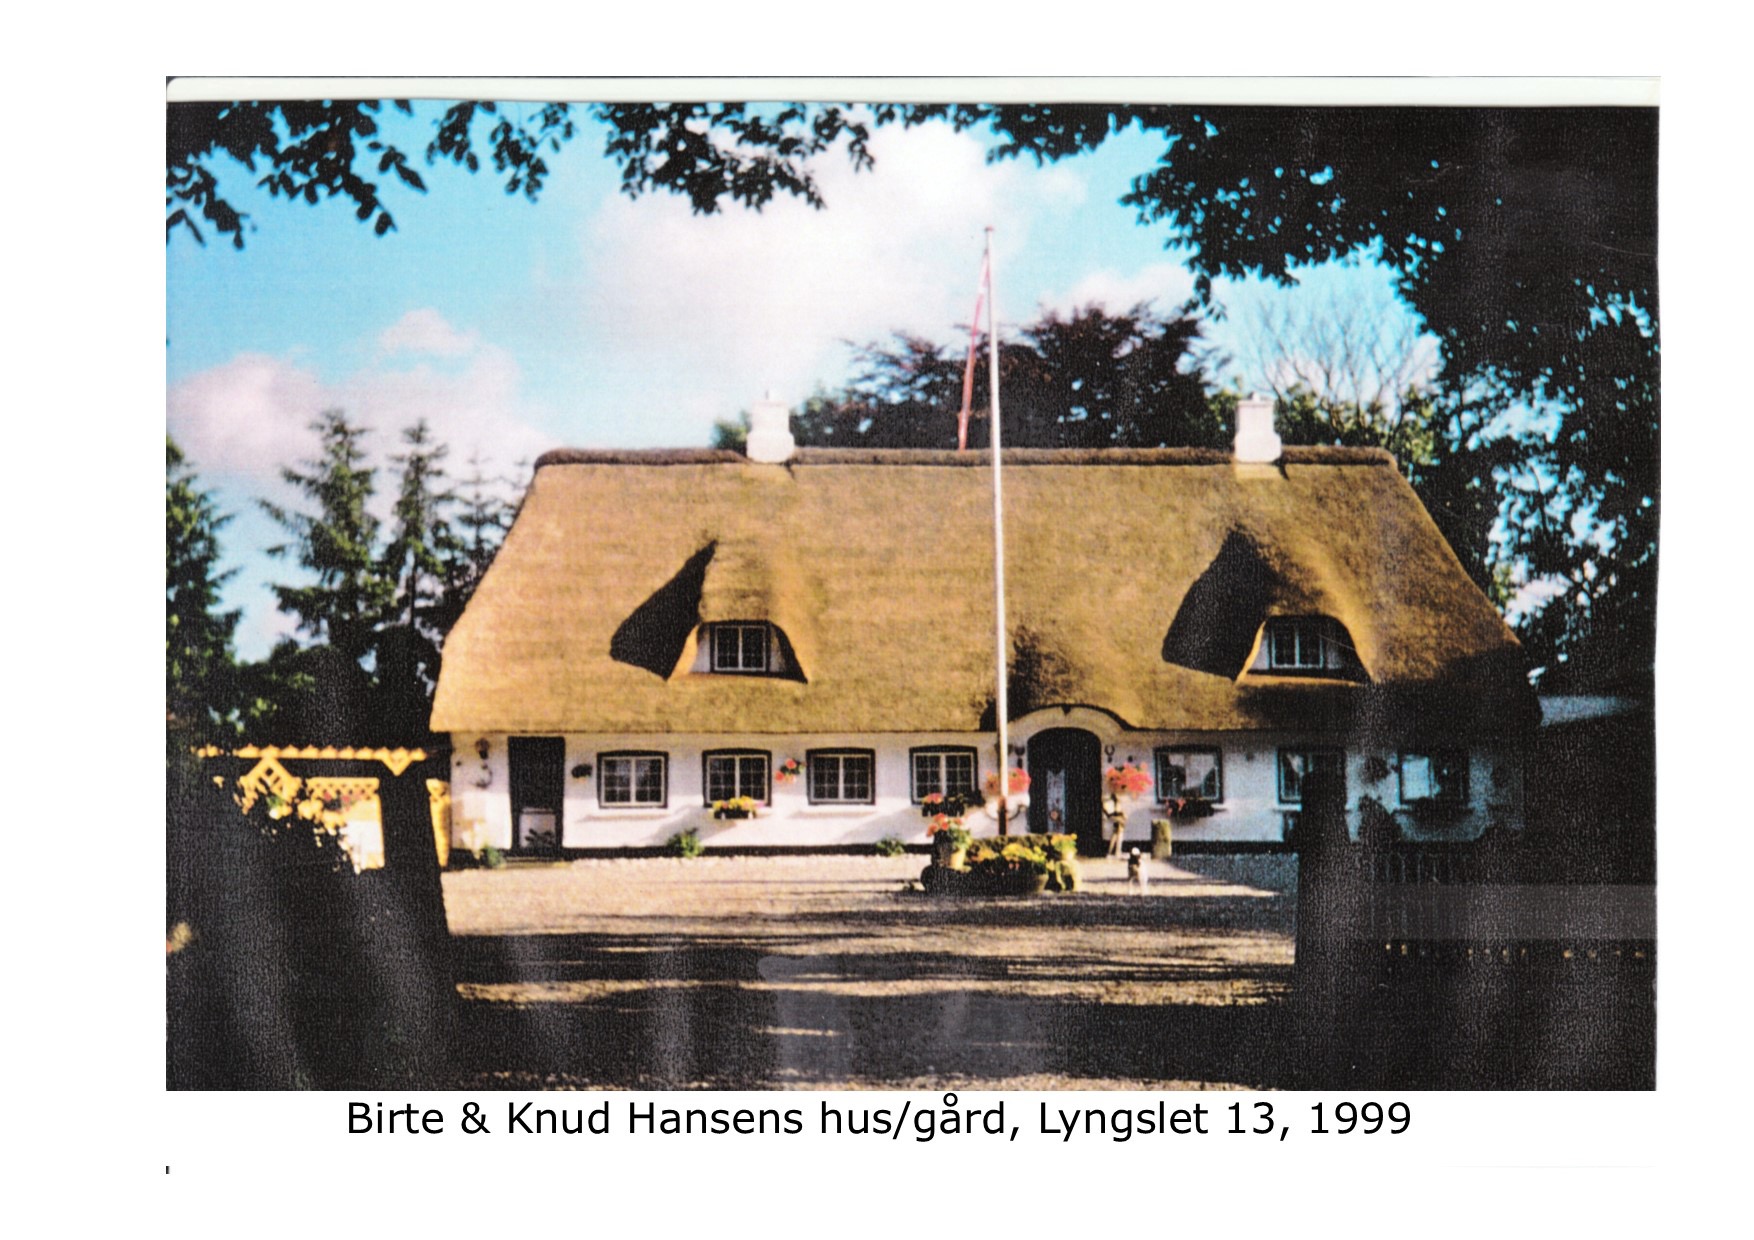 Lyngslet 13 Birthe og Knud Hansen 1999 